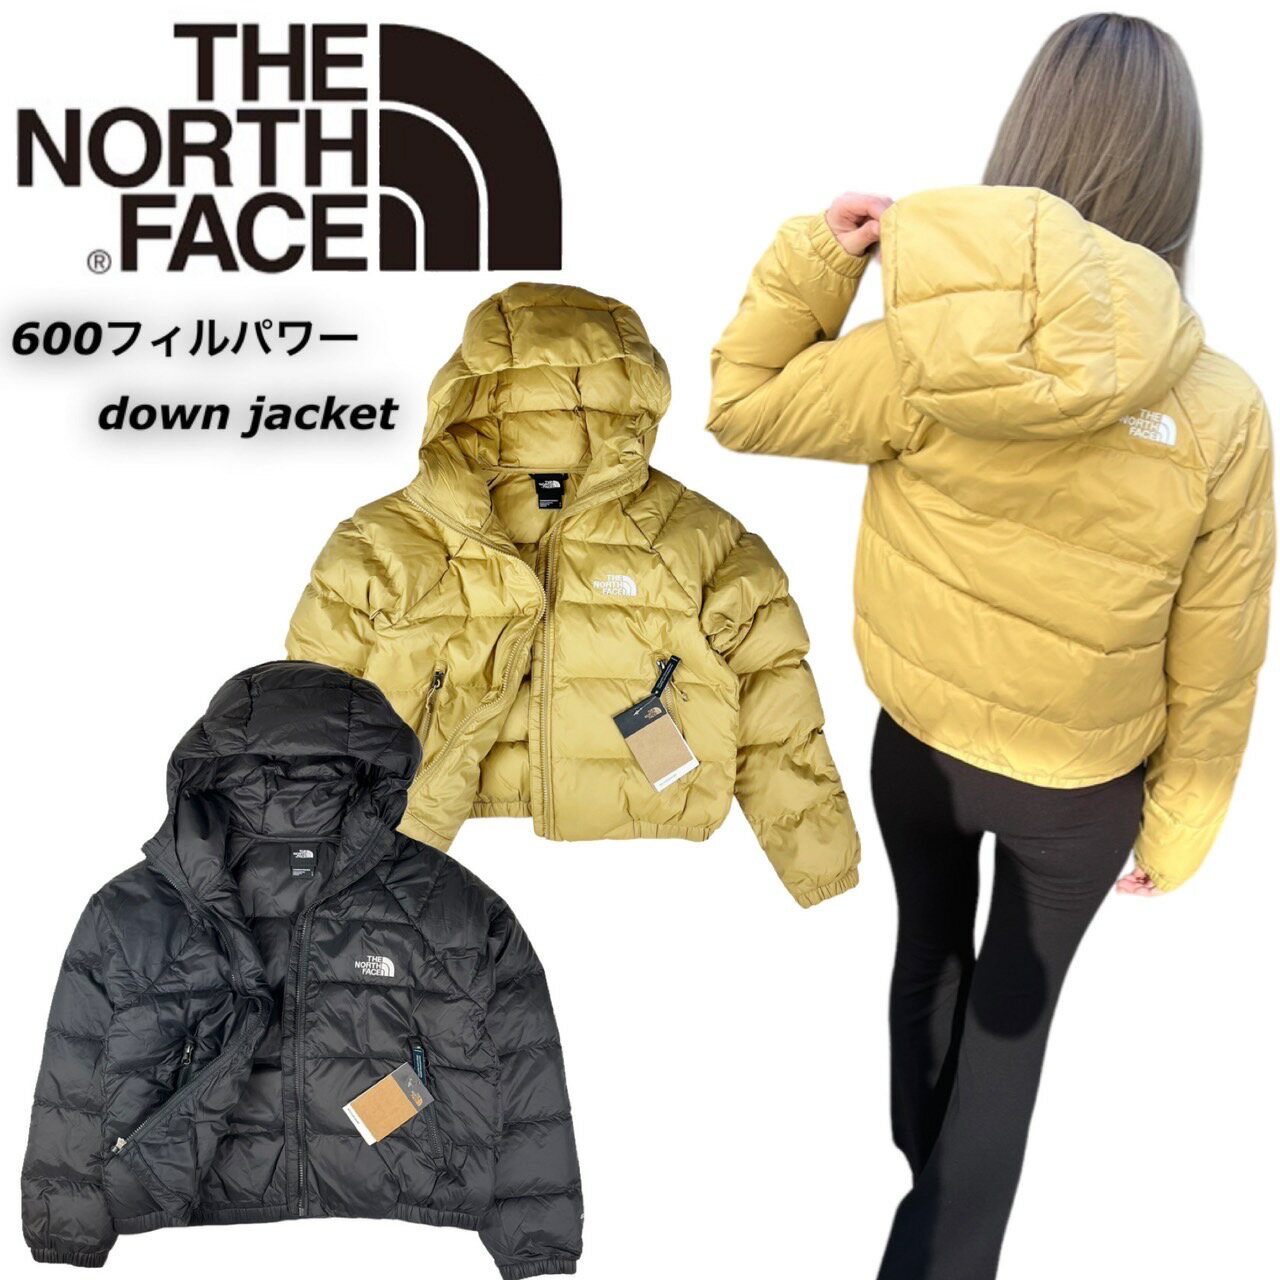 ザ ノースフェイス The North Face ダウンジャケット アウター NF0A5GGG レディース 600フィル 刺繍ロゴ THE NORTH FACE W HYDRENLTE DWN HDY